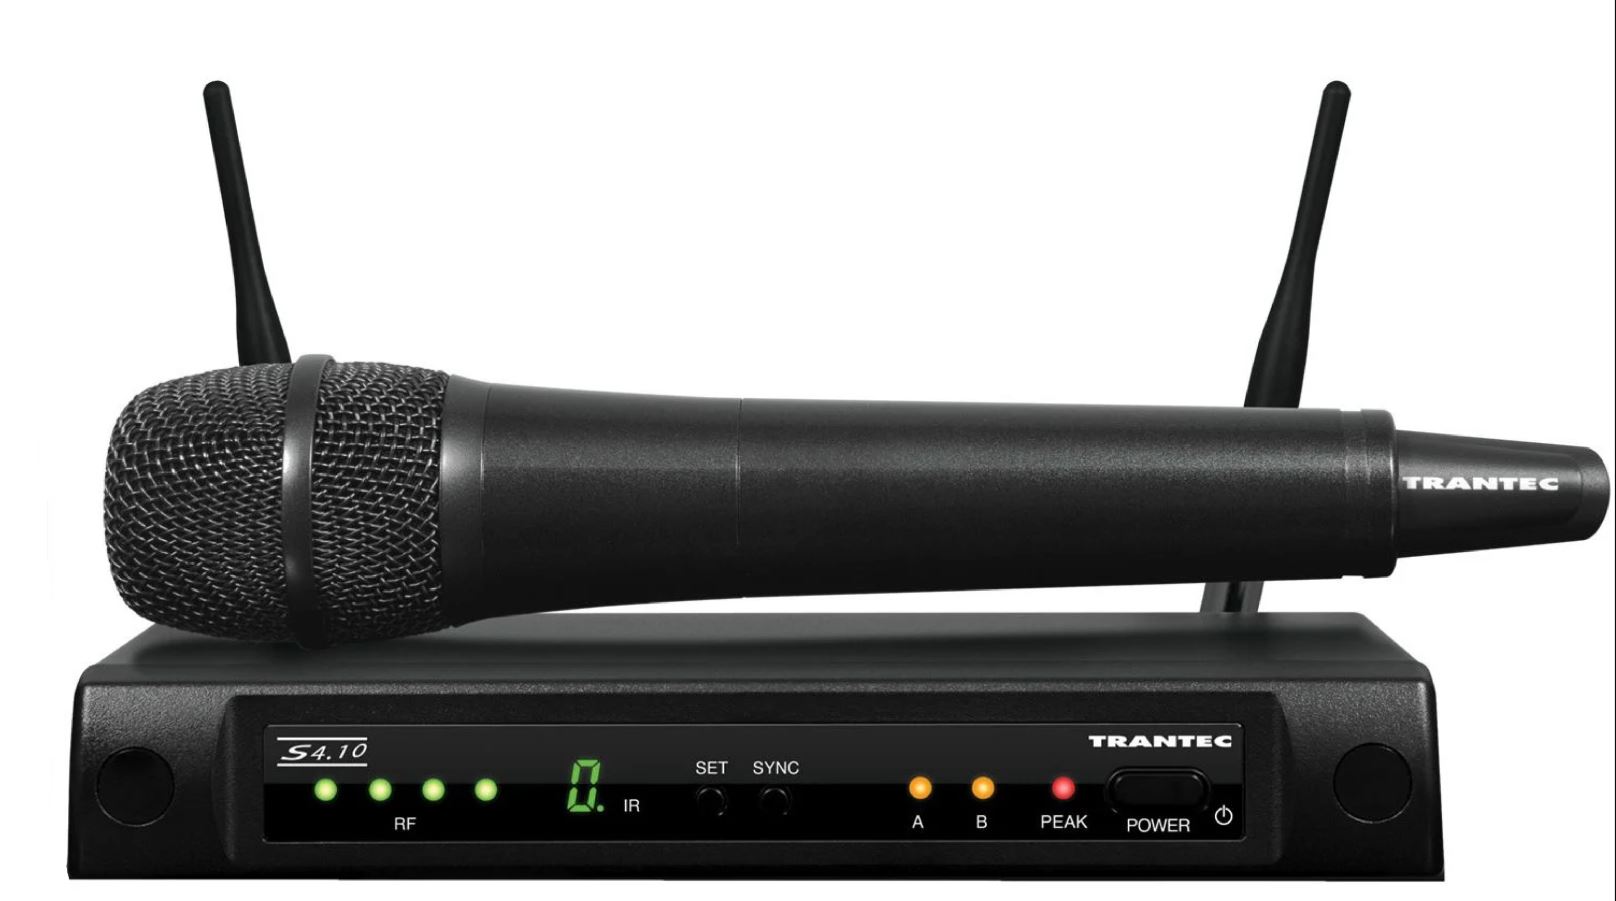  Trantec  S4.1. HD - Profesjonalny system mikrofonowy   z nadajnikiem do ręki. Wytrzymała solidna konstrukcja do pracy w ciężkich warunkach. Automatyczne wstrajanie do jednego z 16 kanałów